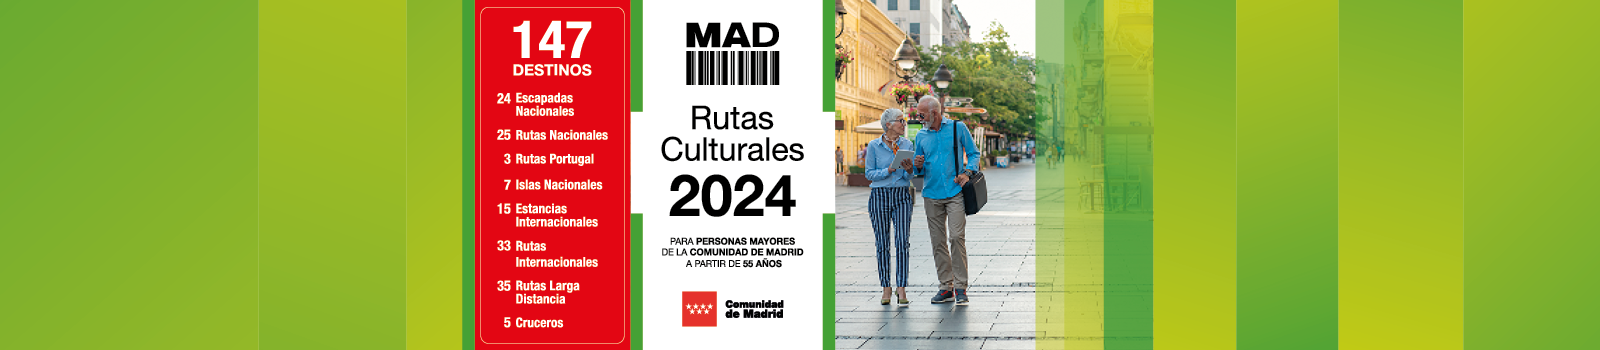 Rutas Culturales Madrid 2024